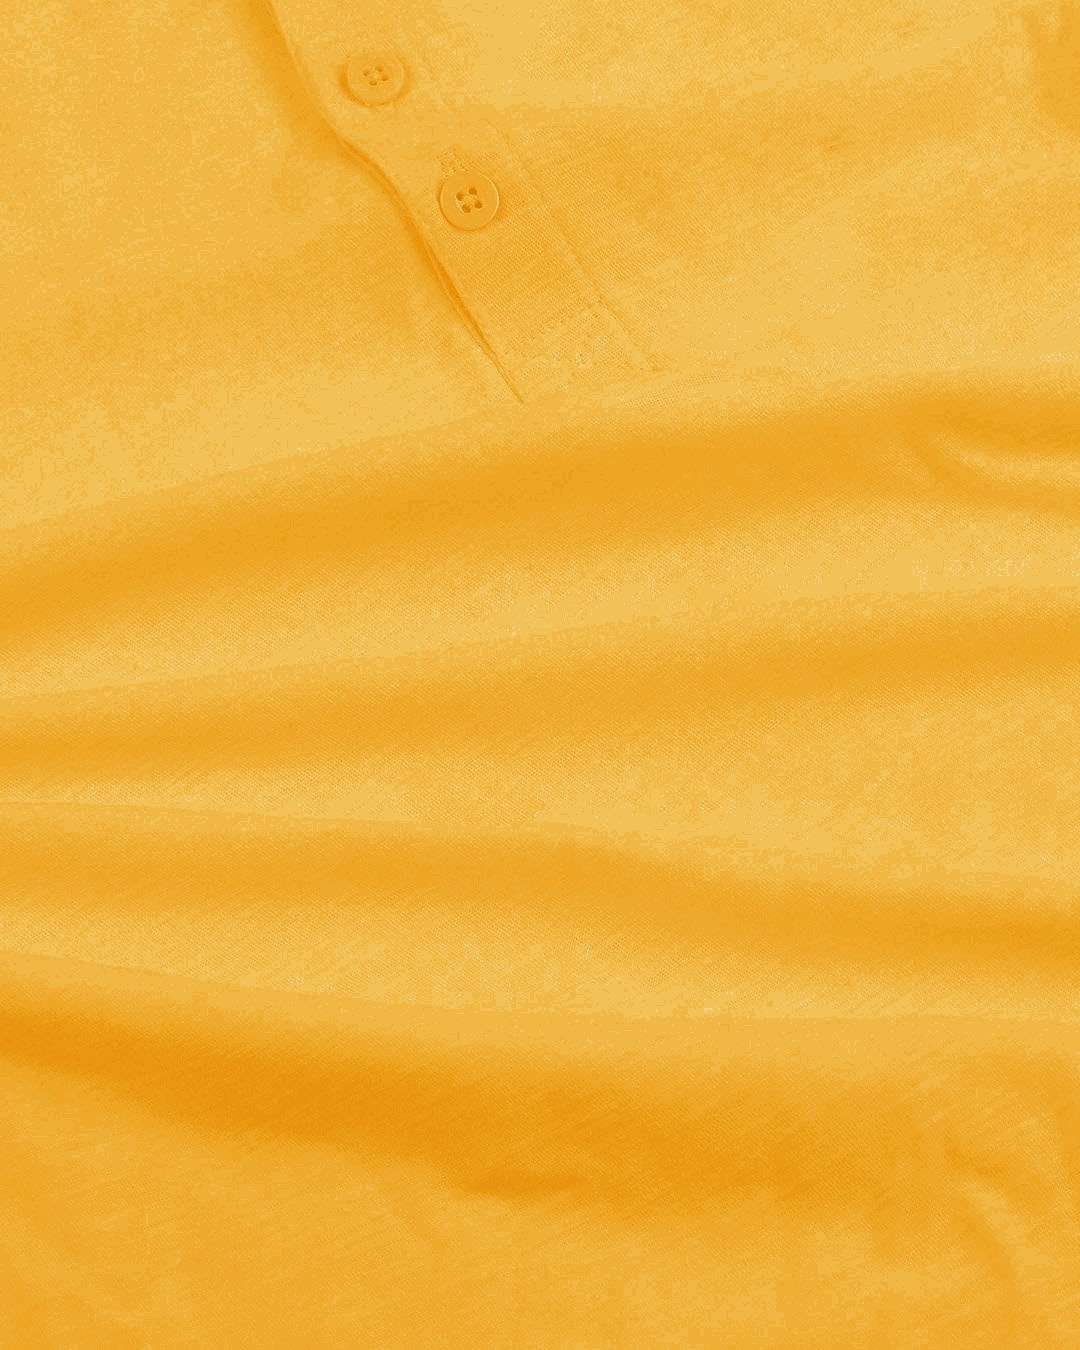 Shop Mustard Yellow Slub Henley T-Shirt